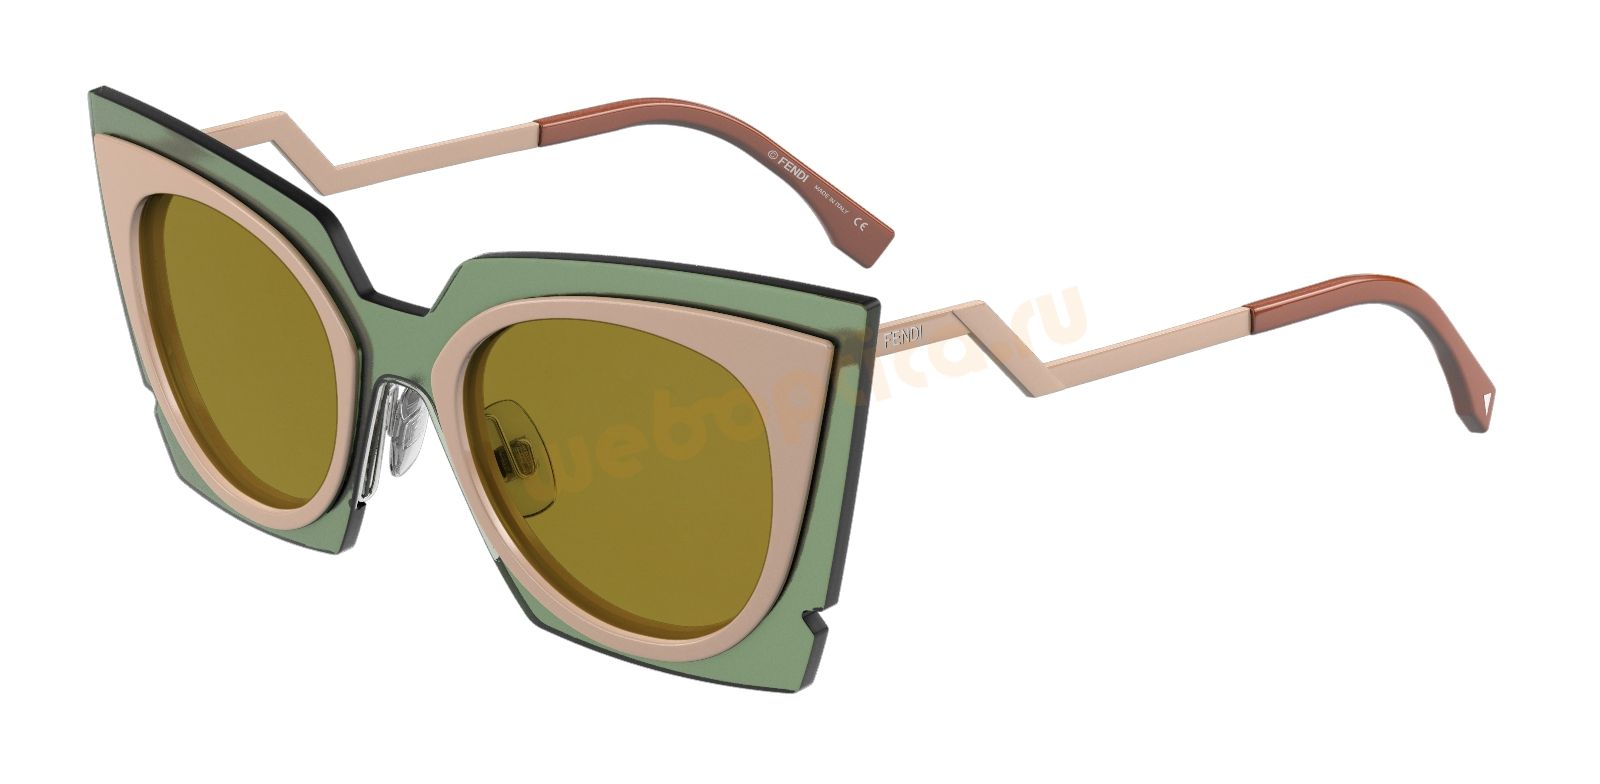 Солнцезащитные очки FENDI FF 0117S-IC7 где купить в москве цена интернет дешево